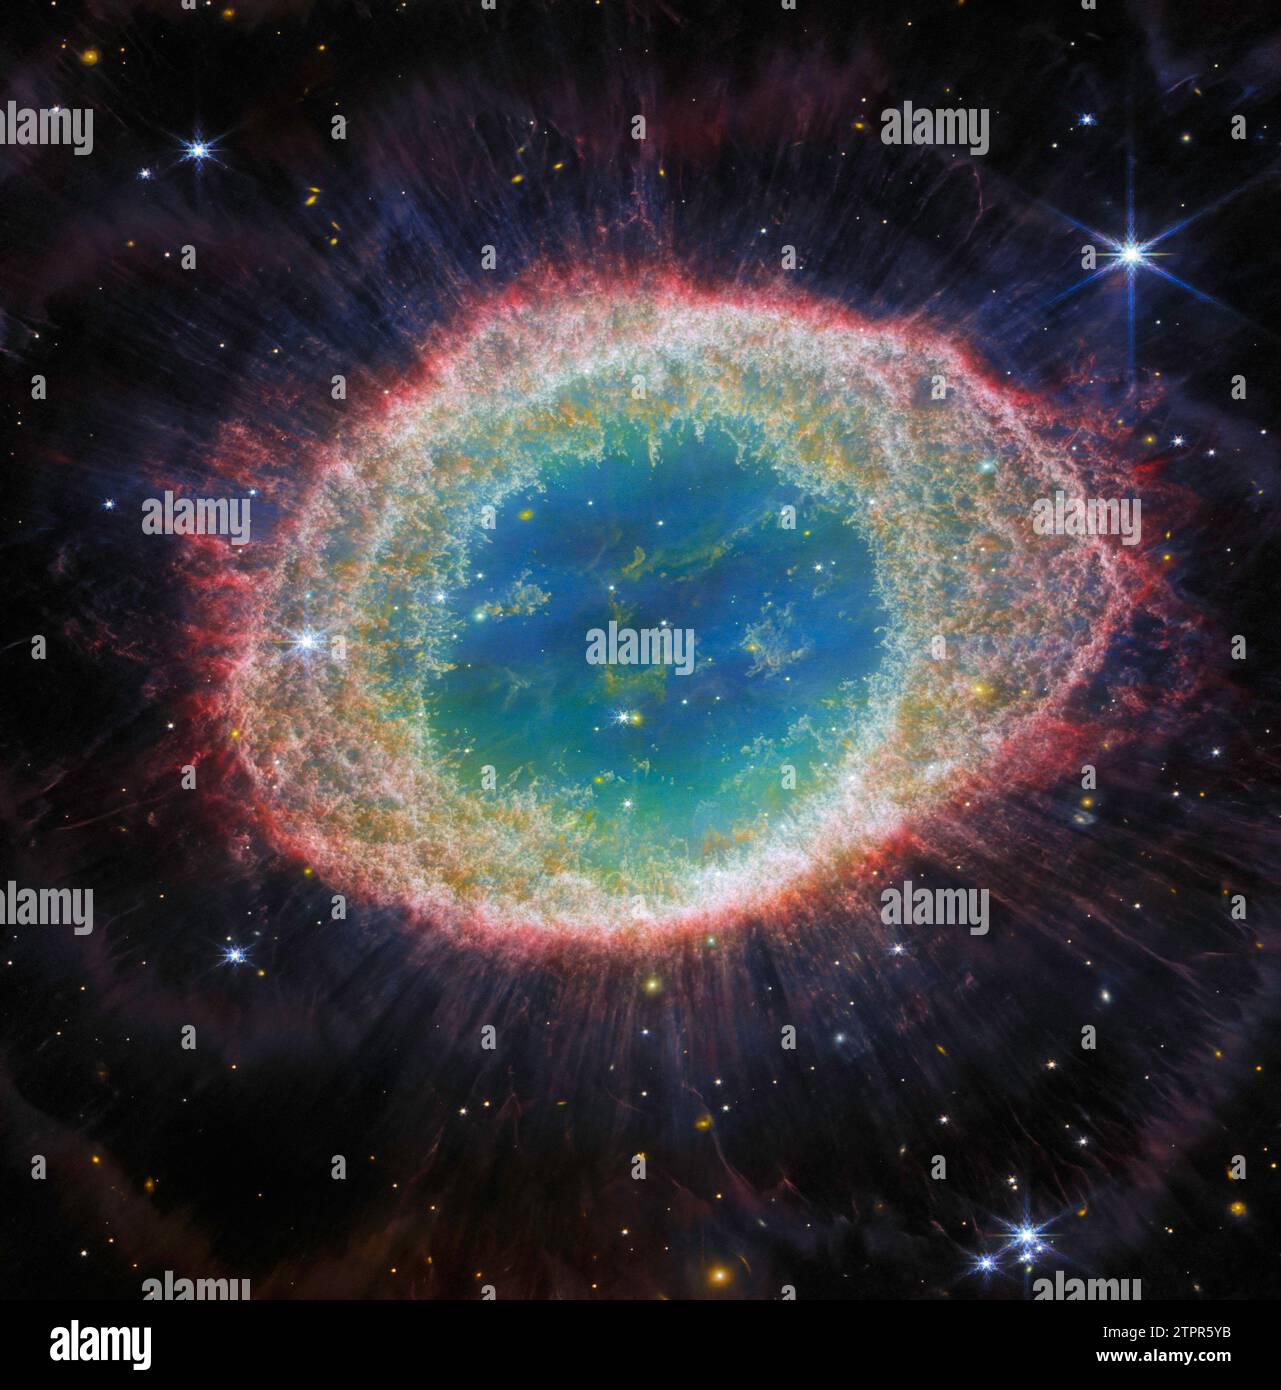 Washington, Usa. August 2023. Dieses Bild, das am 21. August 2023 veröffentlicht wurde und von der NIRCam (Near-Infrared Camera) des James Webb Space Telescope der NASA aufgenommen wurde, zeigt den bekannten Ringnebel mit beispiellosen Details. Der Ringnebel ist ein archetypischer planetarischer Nebel, der von einem Stern gebildet wird, der seine äußeren Schichten abwirft, während ihm der Treibstoff ausgeht. Auch bekannt als M57 und NGC 6720, liegt er in etwa 2.500 Lichtjahren Entfernung relativ nahe an der Erde. Dieses neue Bild bietet eine beispiellose räumliche Auflösung und spektrale Empfindlichkeit. NASA/UPI Credit: UPI/Alamy Live News Stockfoto